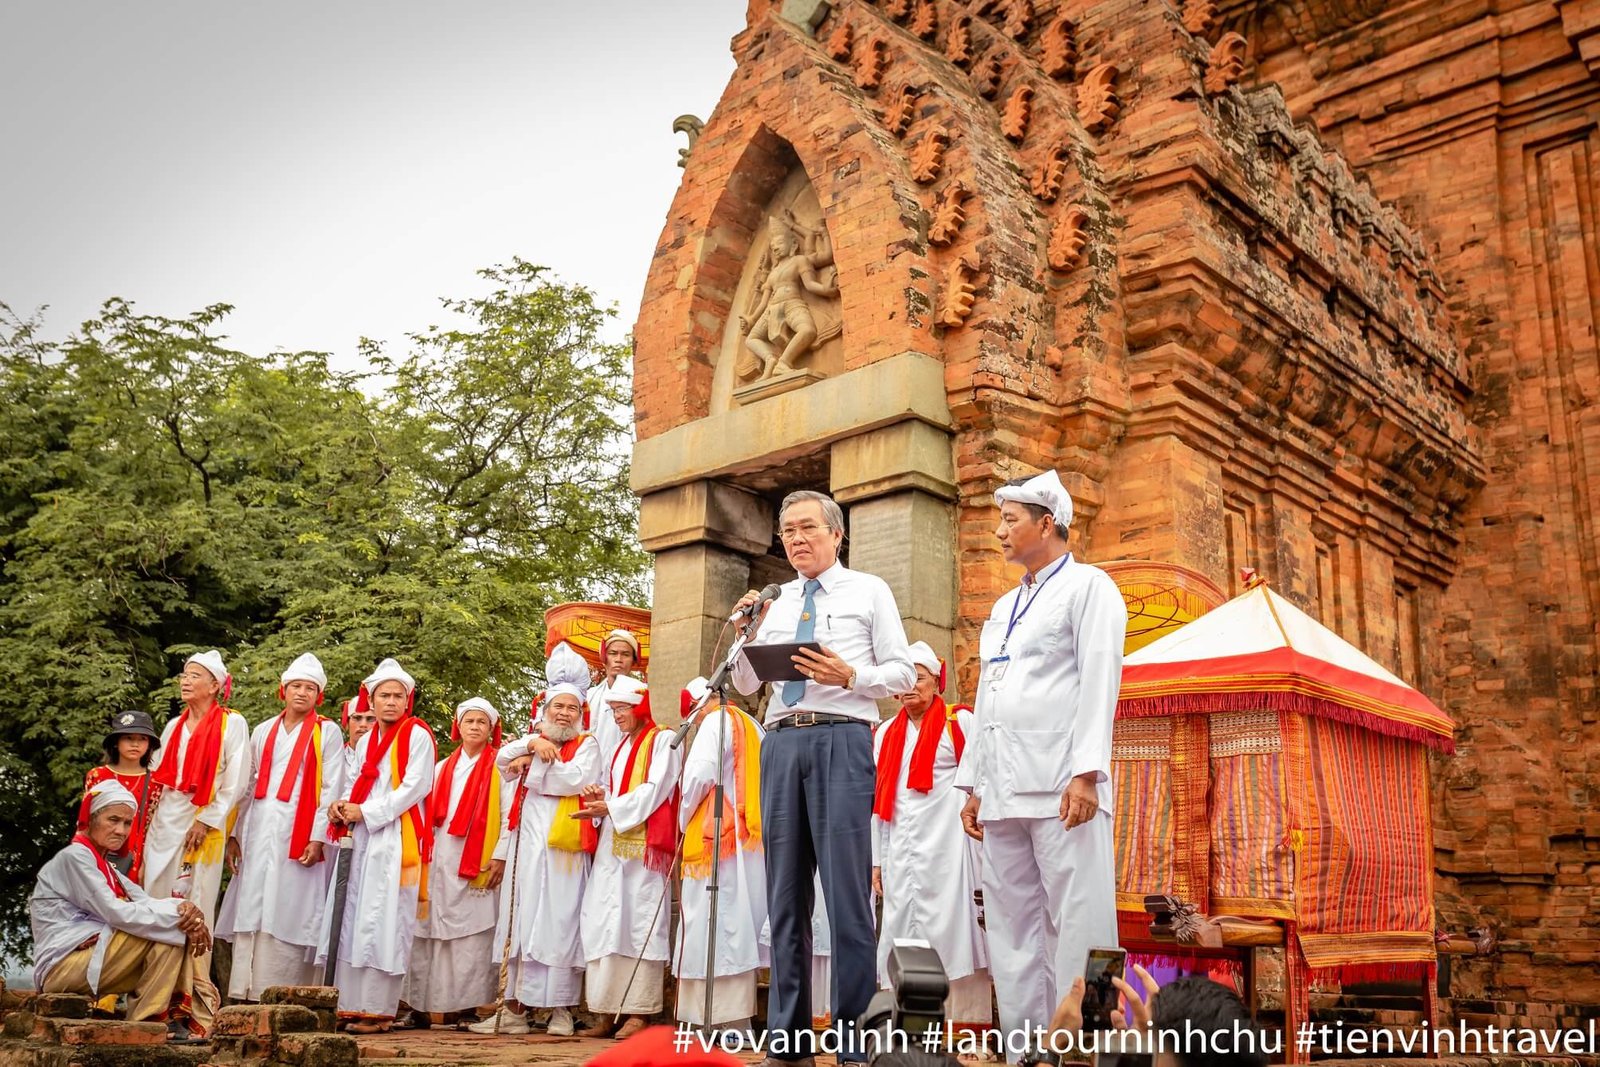 Ông Lê Văn Bình - Phó chủ tịch UBND tỉnh phát biểu chúc mừng lễ hội trên đền tháp Po Klong Garai